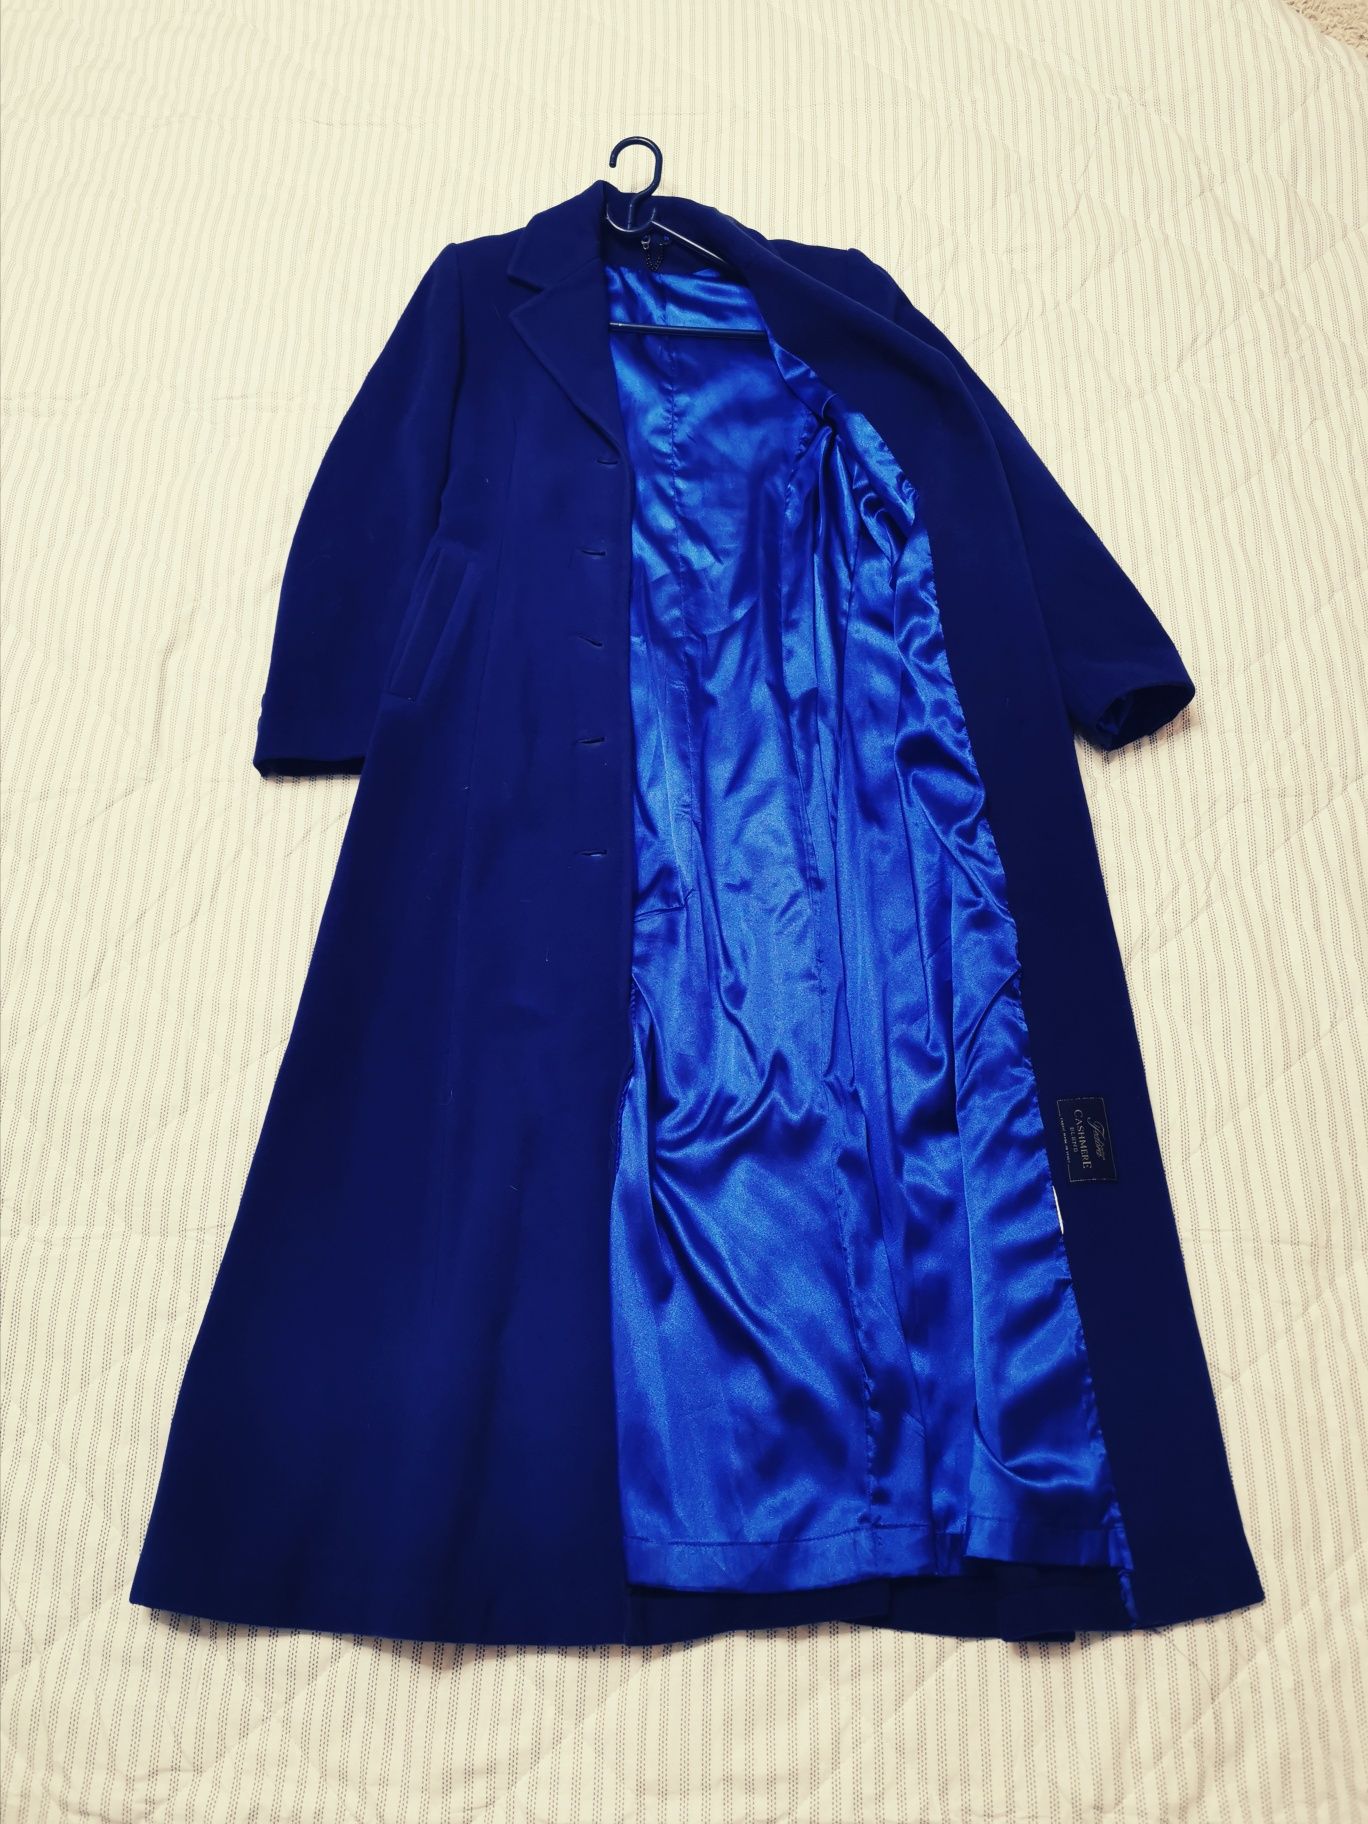 Пальто удлиненное кашемировое (Италия), цвет "синий электрик", размер